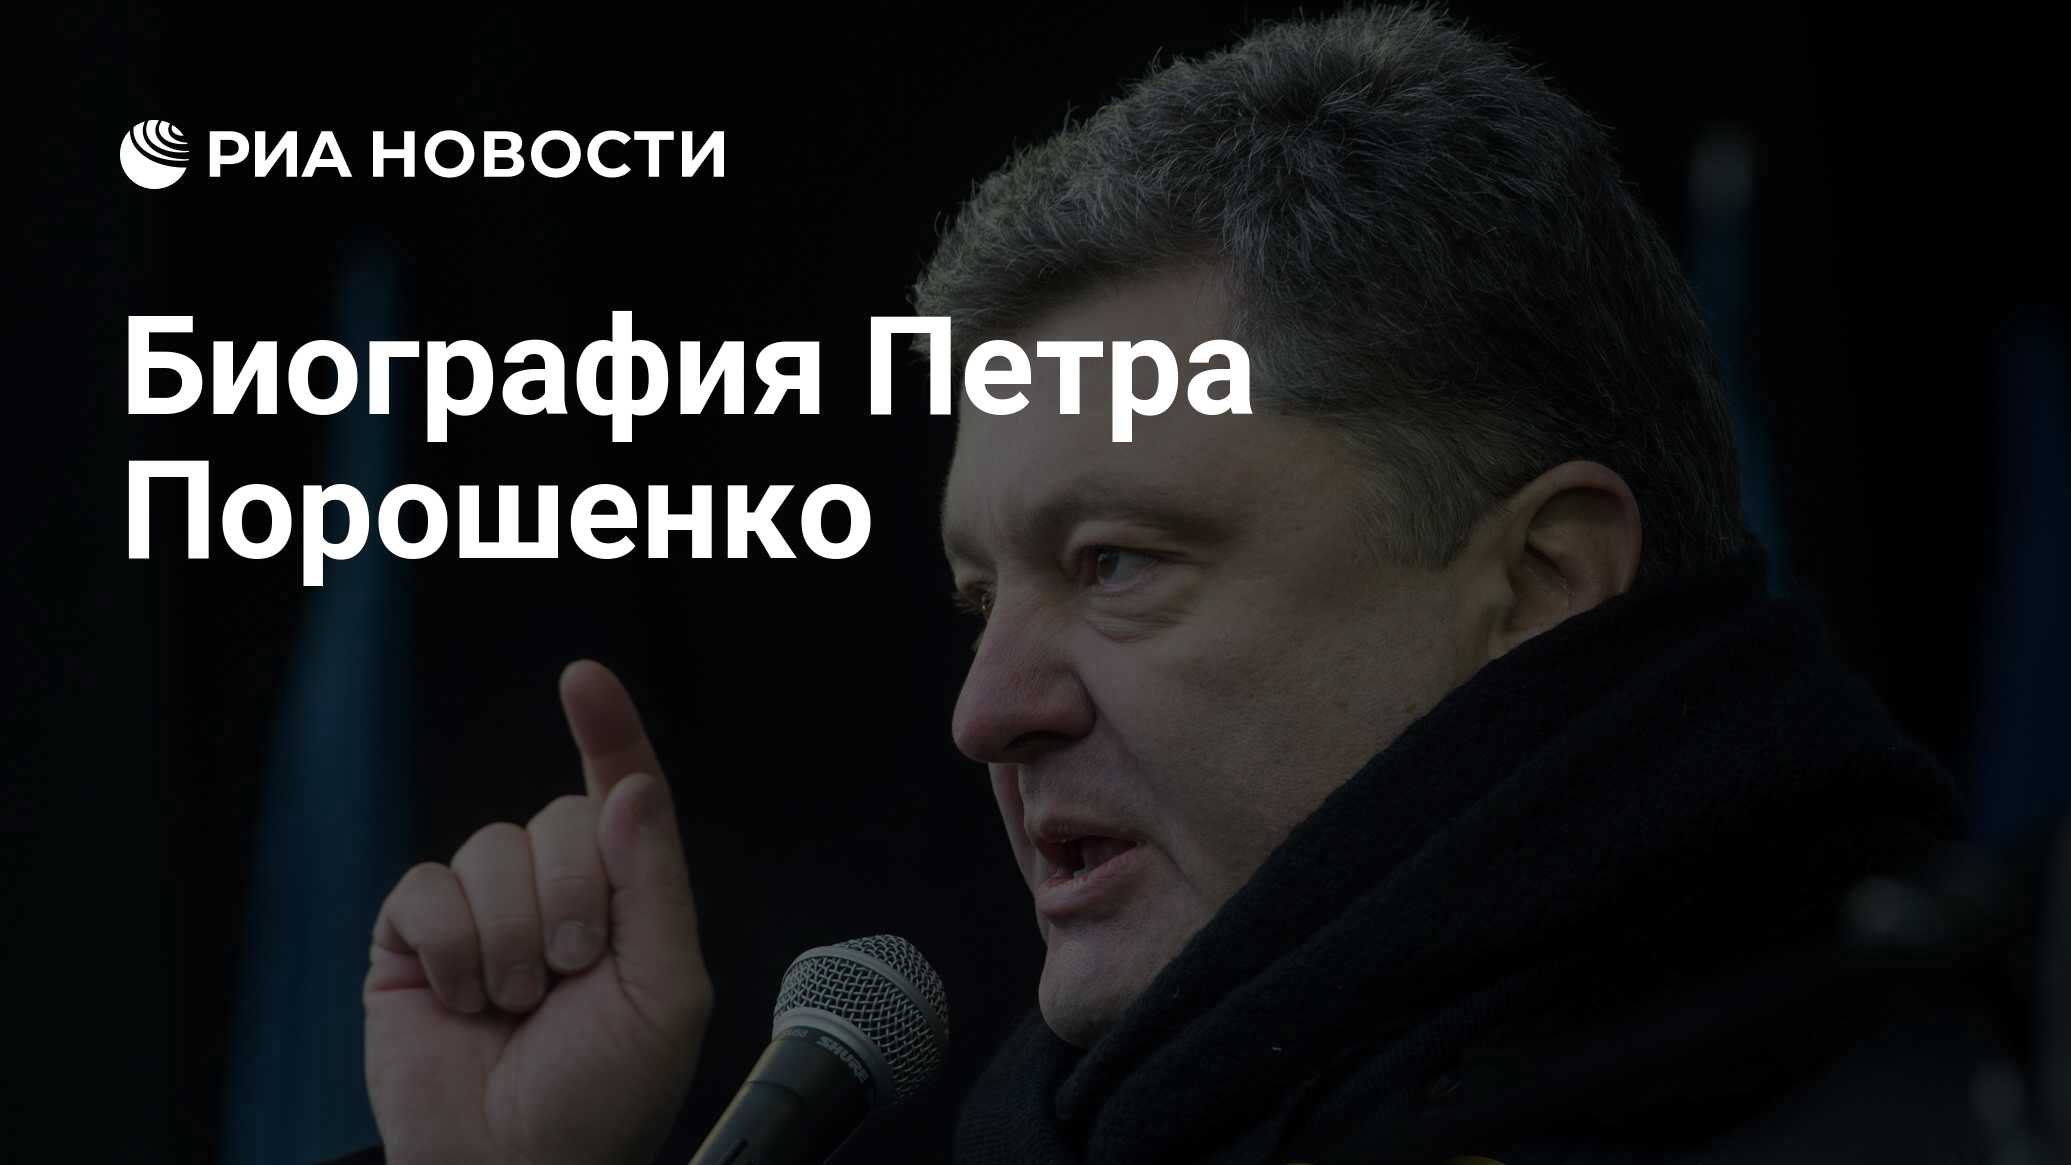 Биография Петра Порошенко - РИА Новости, 12.05.2014